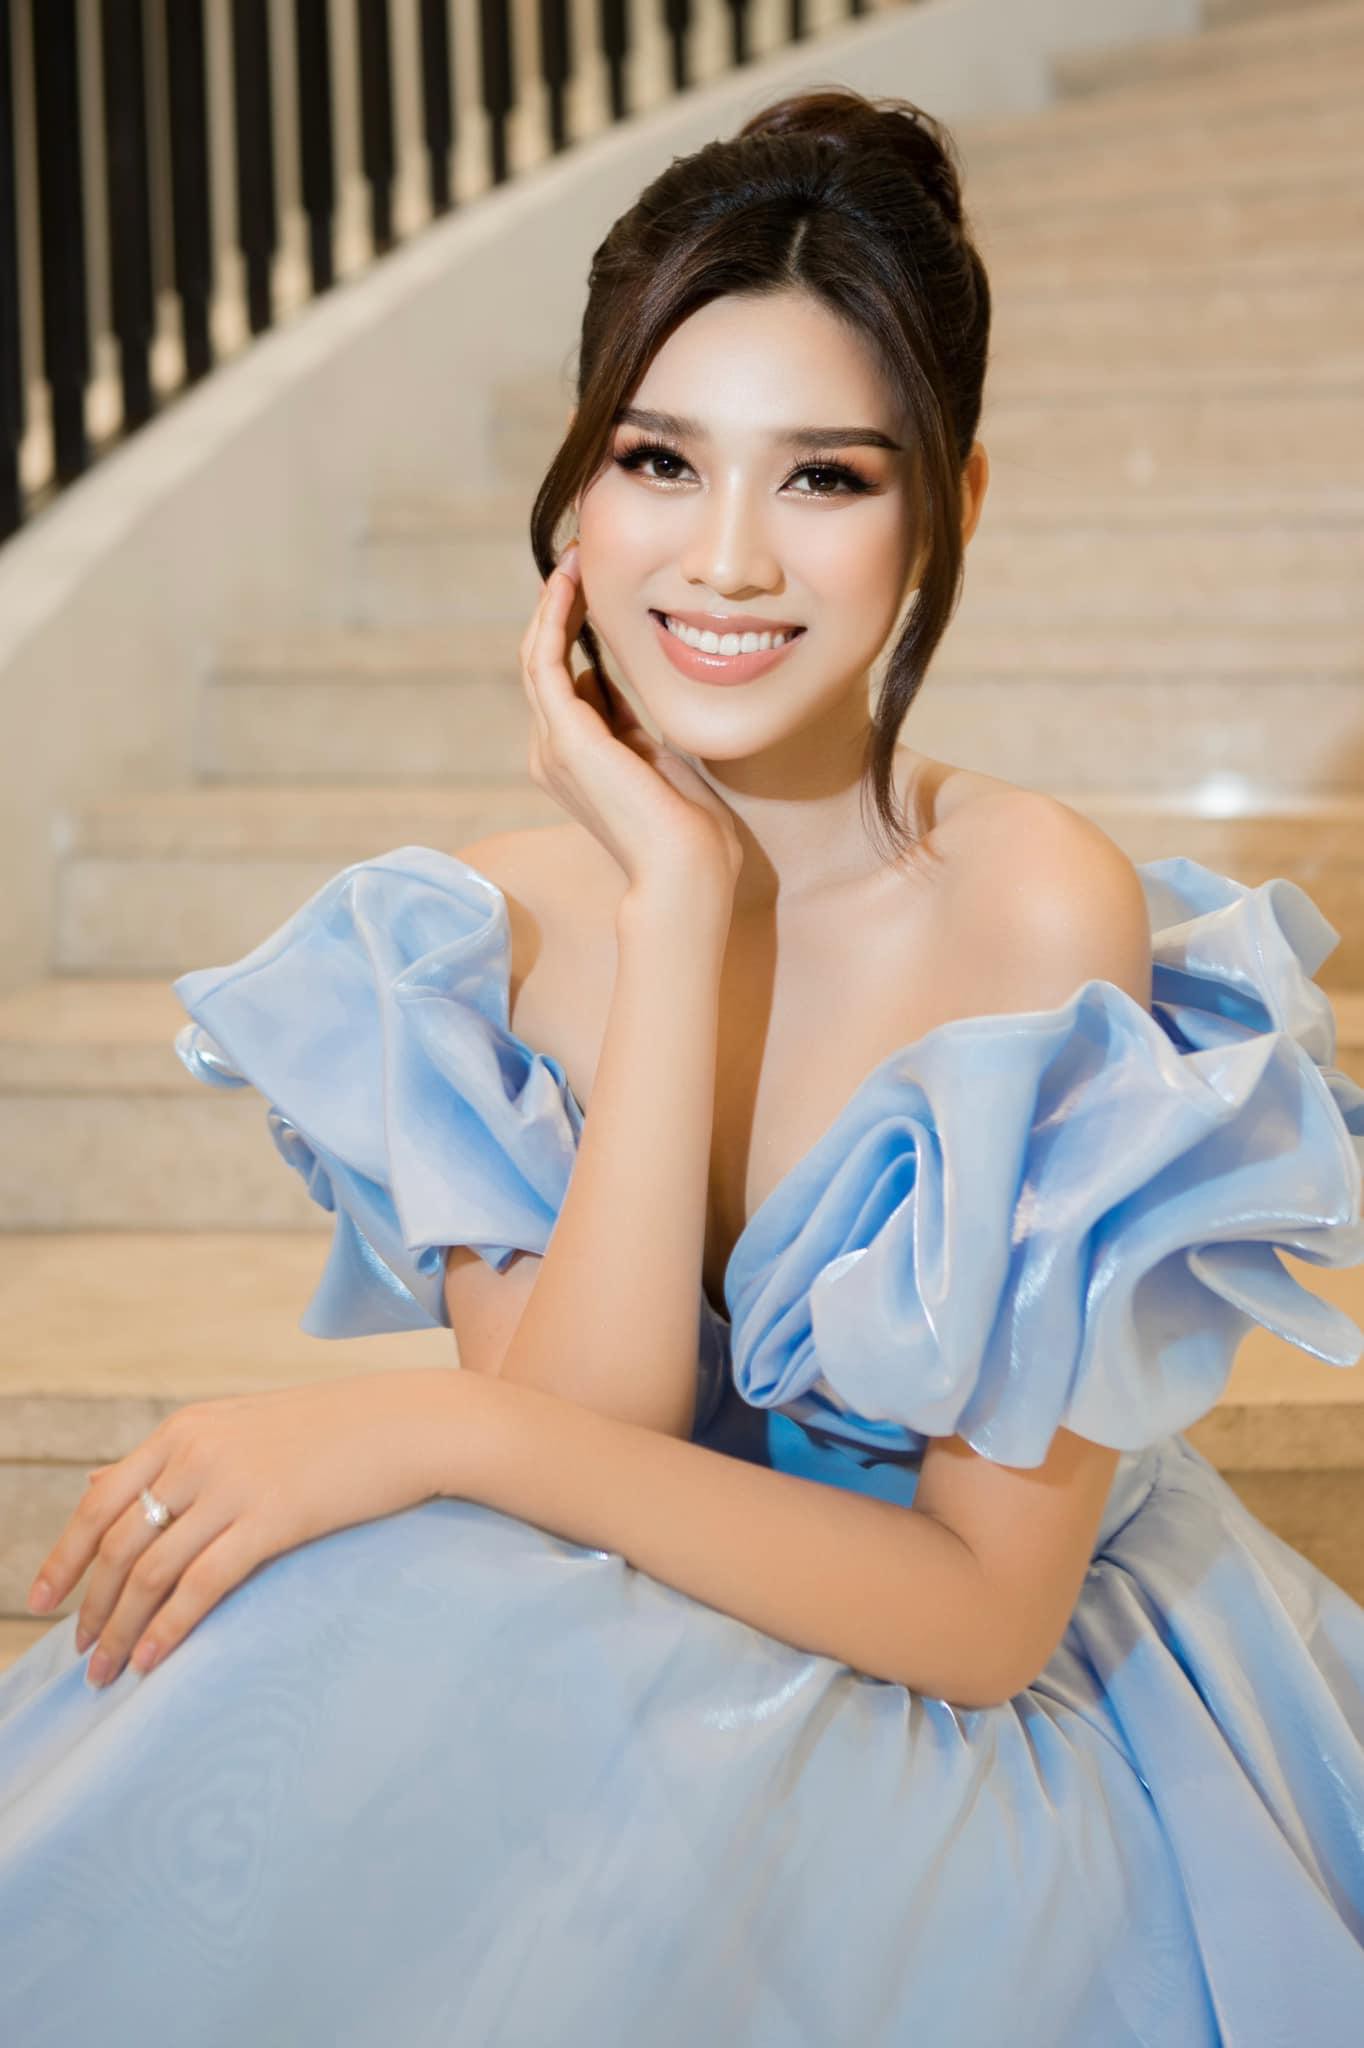 Hoa hậu Đỗ Thị Hà ‘biến hóa’ với tóc: Xoăn đuôi nhẹ vẫn là ‘chân ái’ - Ảnh 6.